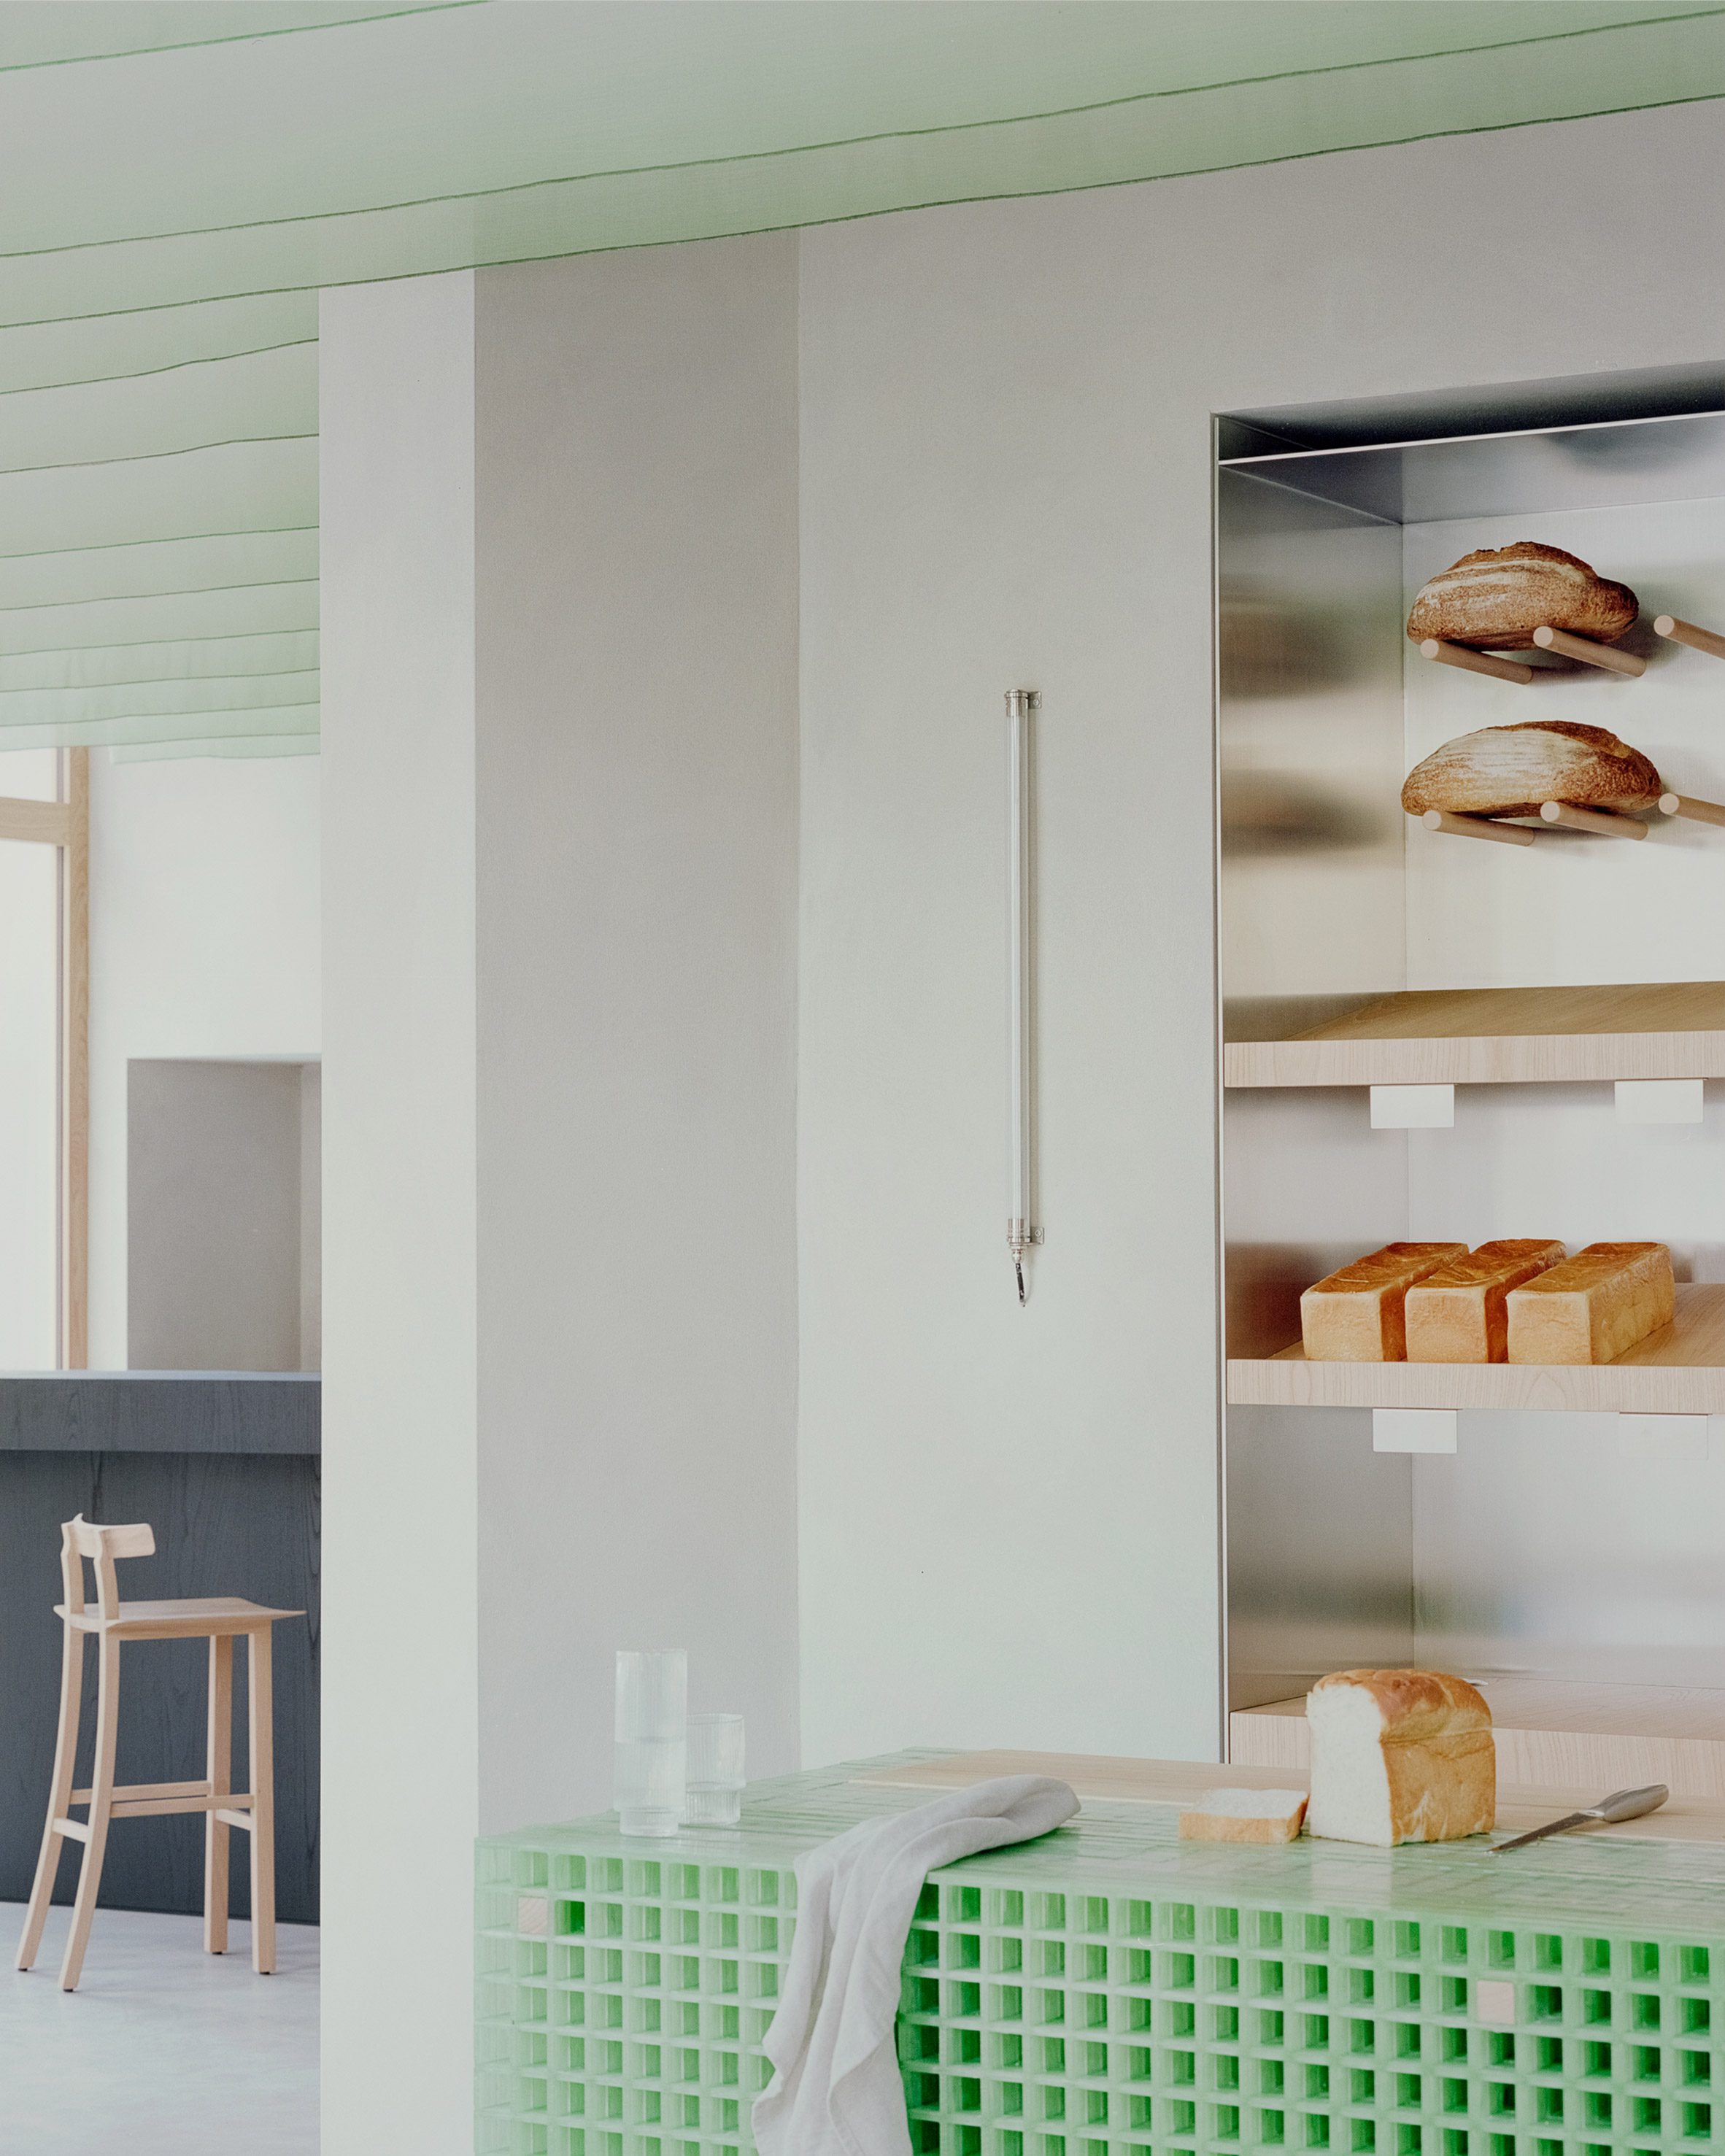 Studio Wok设计米兰面包店Pan作为日本文化的当代诠释|ART-Arrakis | 建筑室内设计的创新与灵感